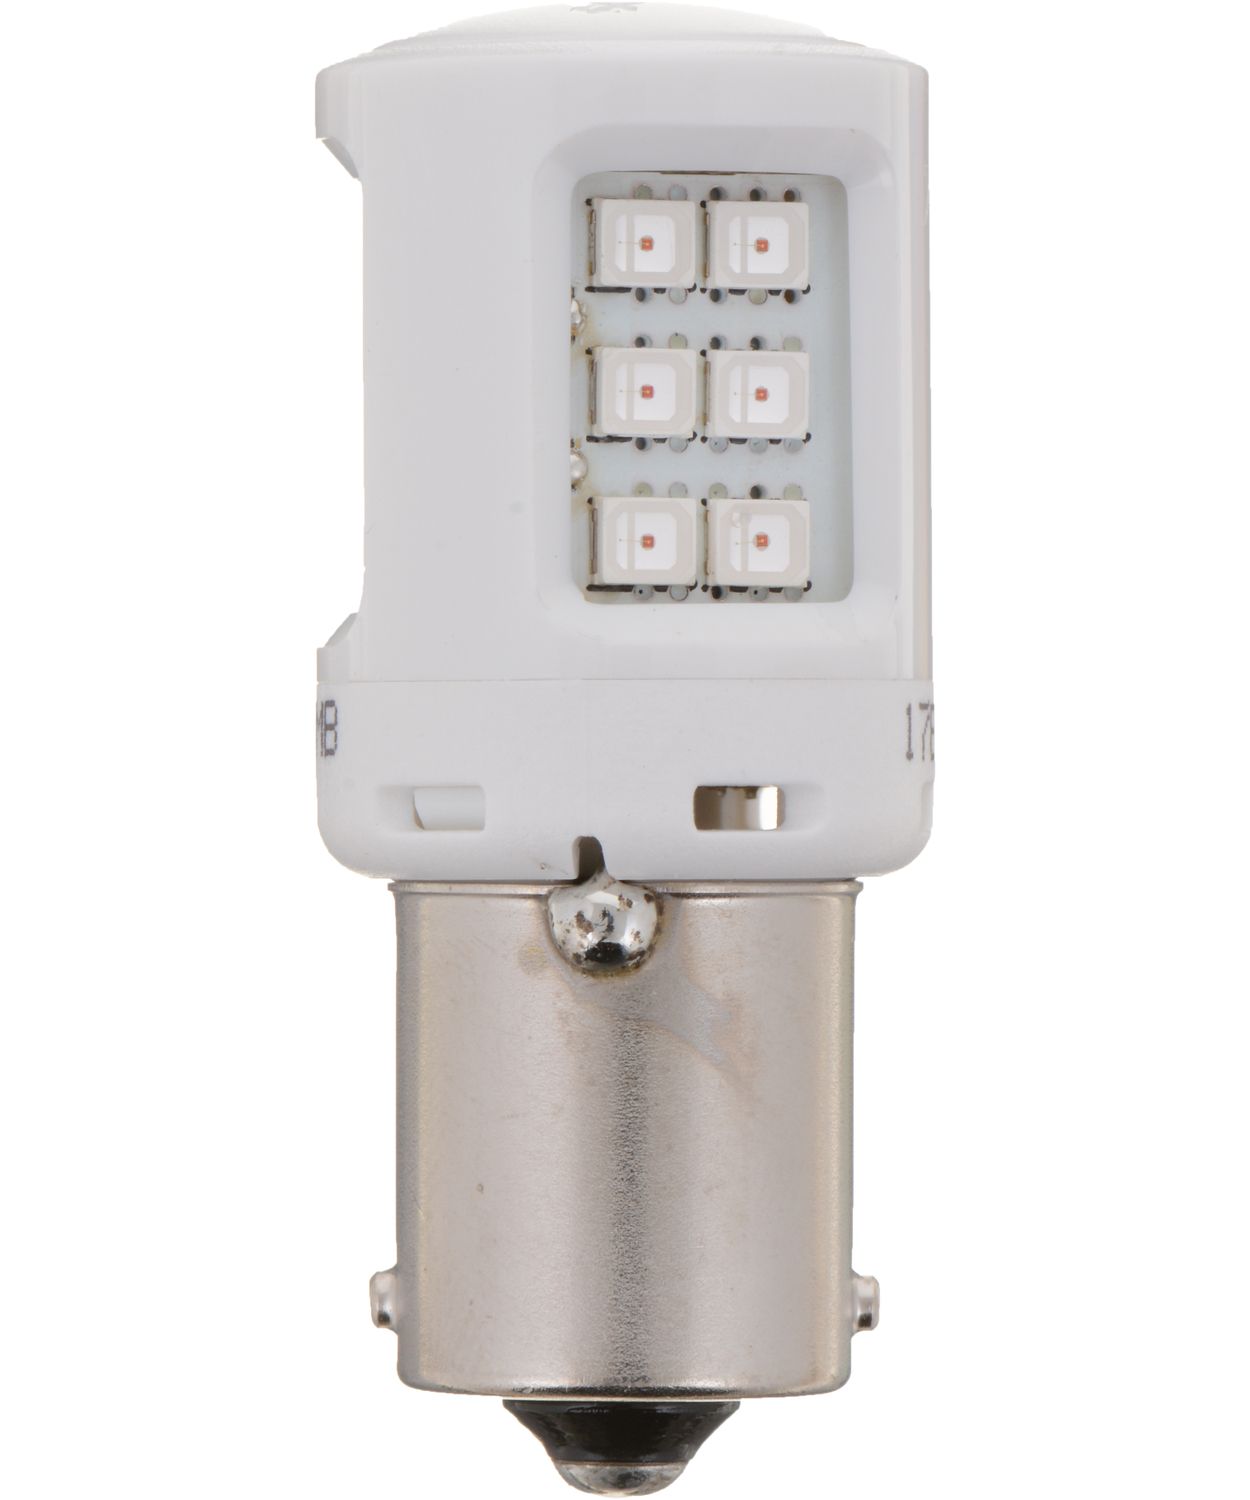  Philips 1156ALED Ultinon LED (Amber), 2 Pack : Automotive